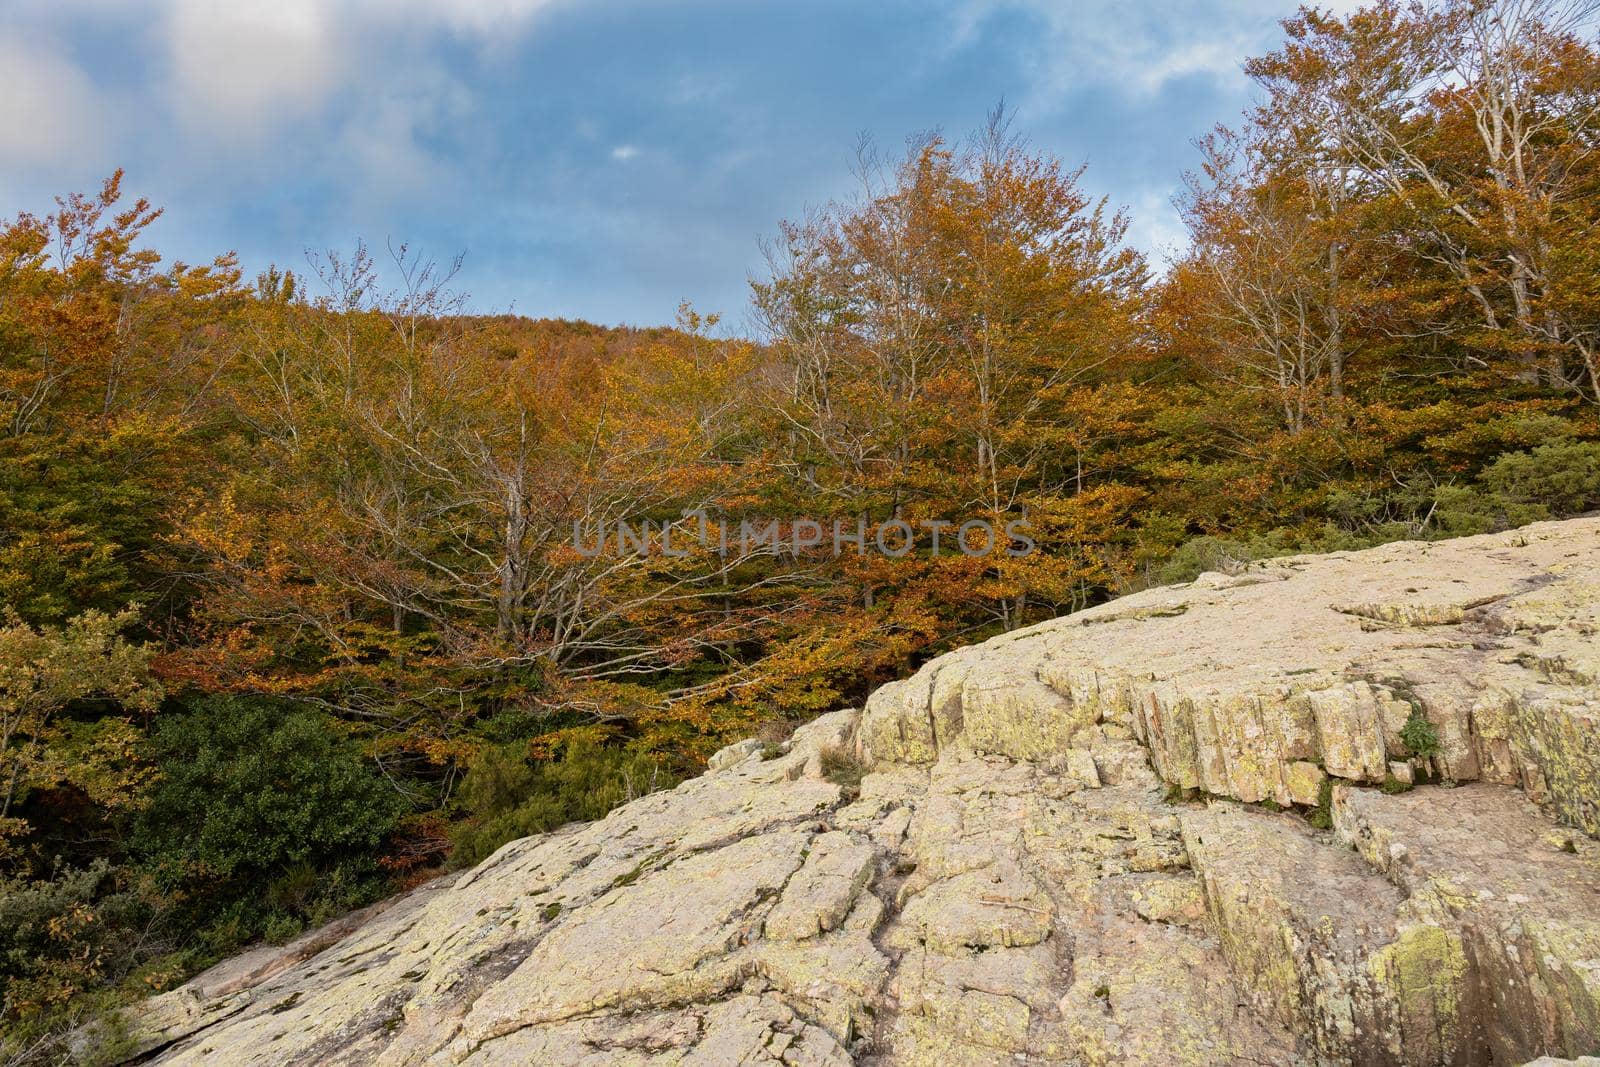 Autumn picture from Spanish mountain Montseny, near Santa fe del Montseny, Catalonia